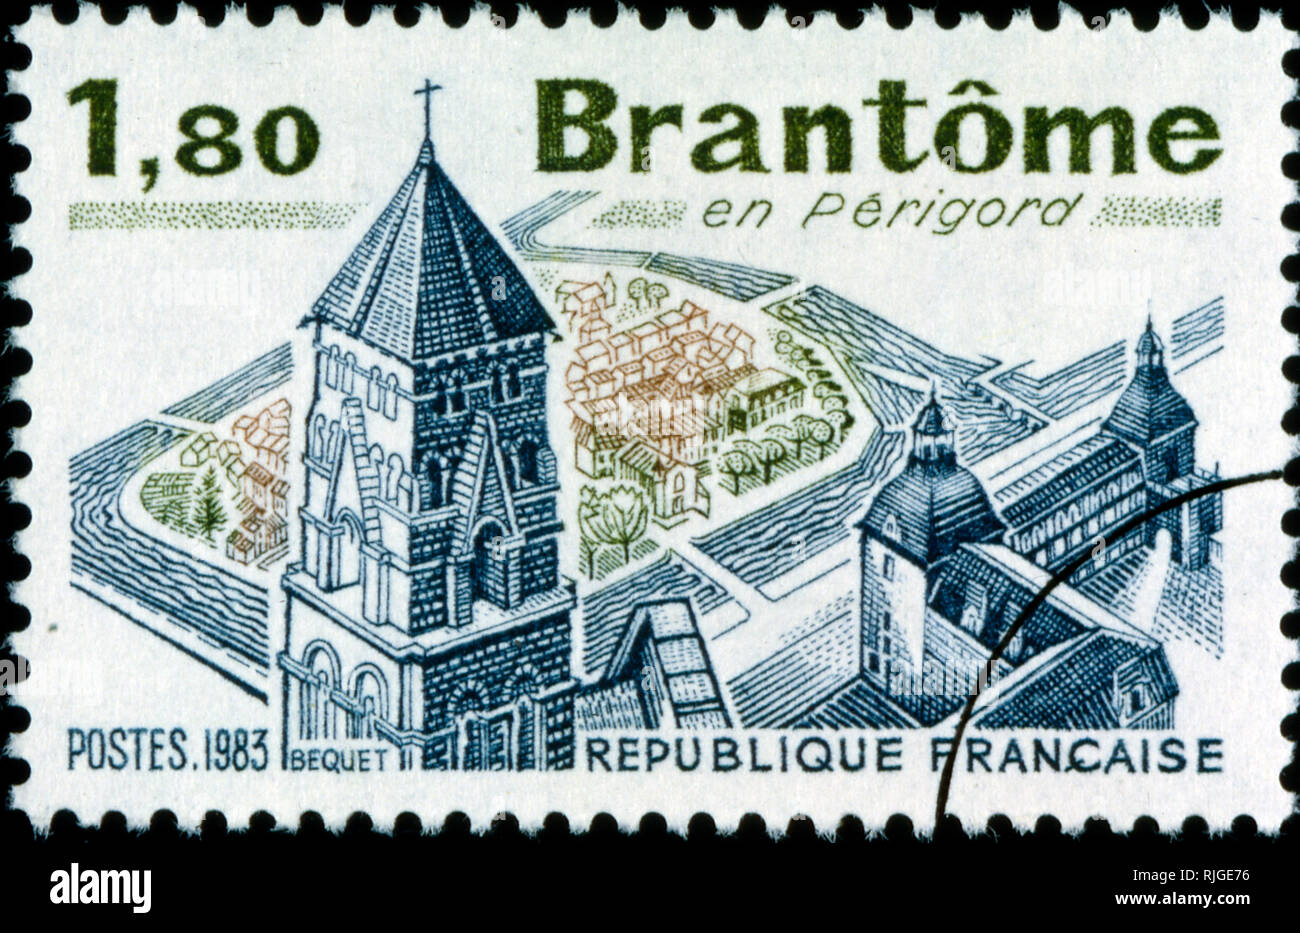 Timbre-poste français commémorant la ville française de Brantome dans le département du sud-ouest de la France 1982 Banque D'Images